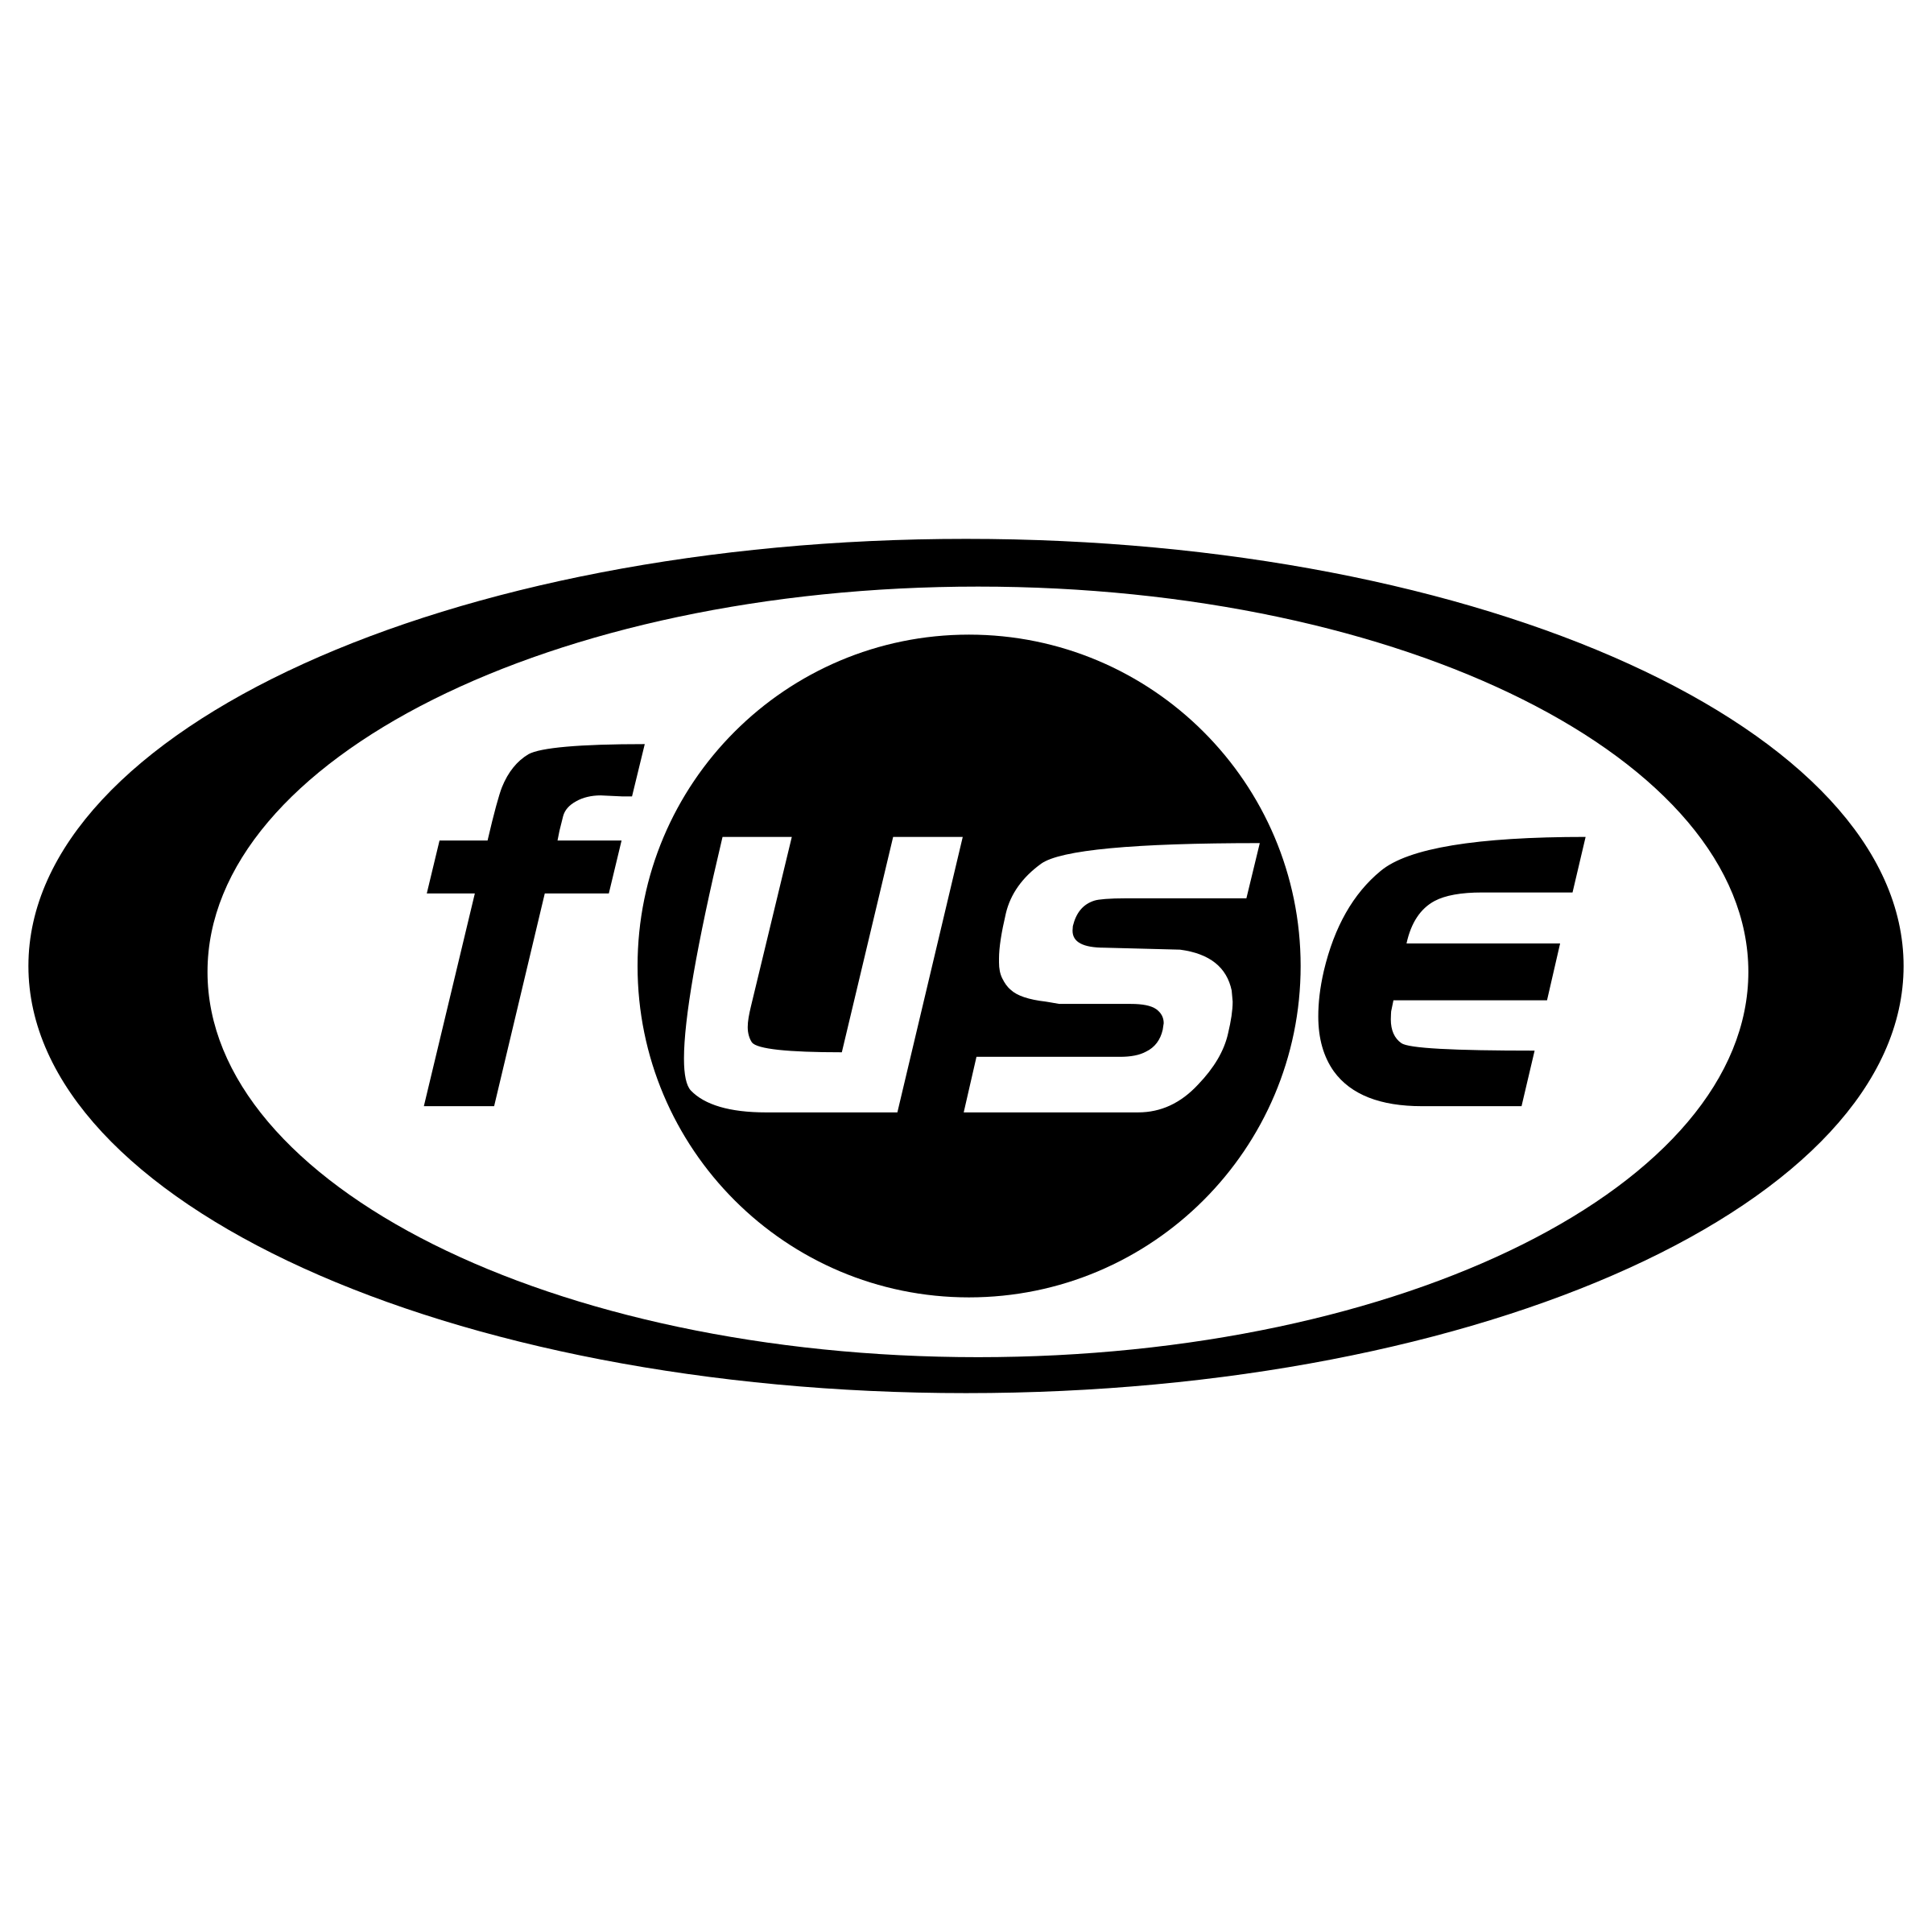 Fuse Logo - Fuse Logo PNG Transparent & SVG Vector